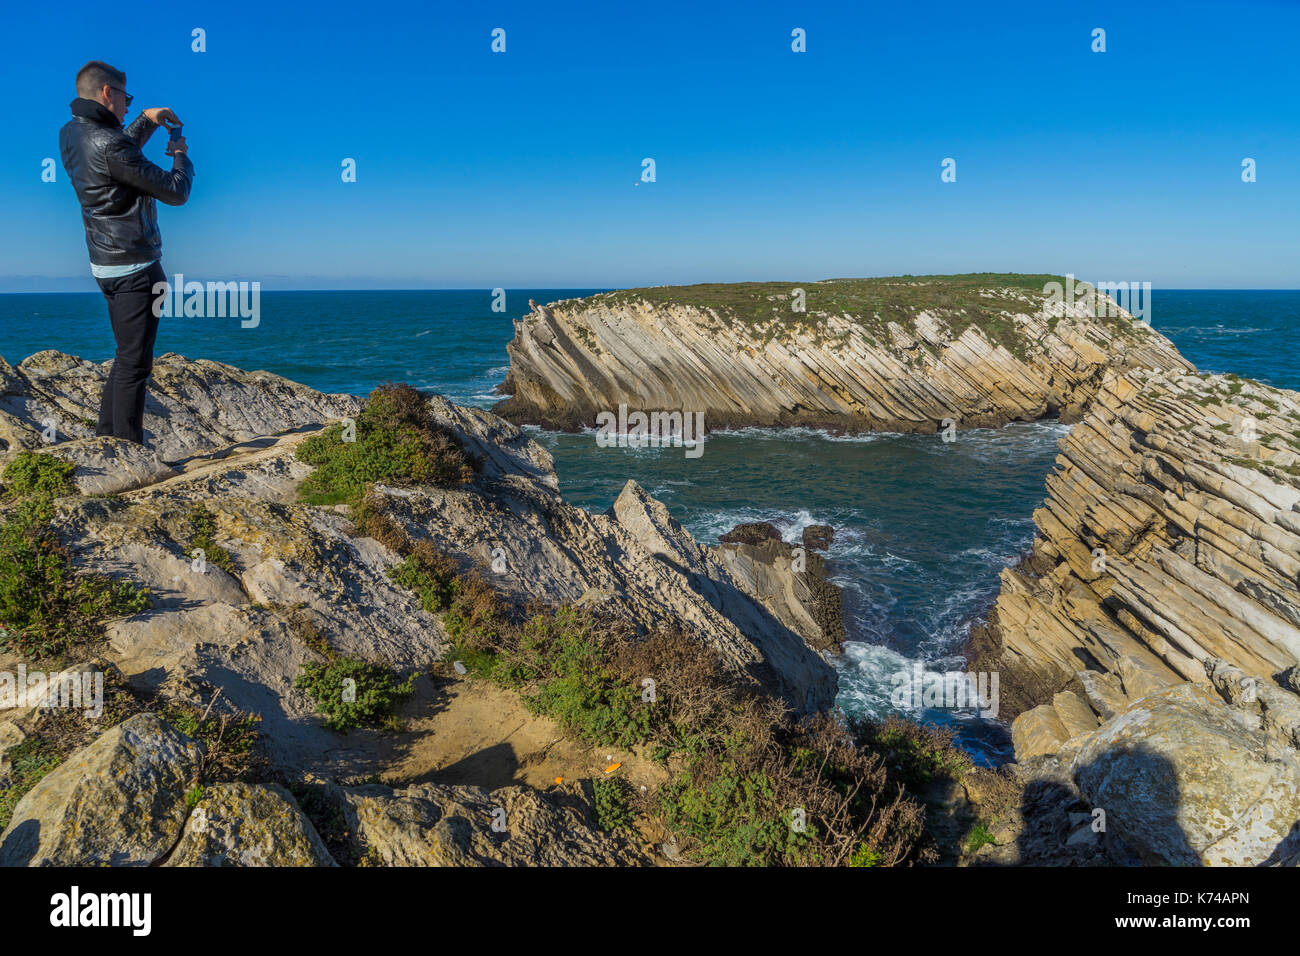 Uomo in piedi in cima a una scogliera di scattare una foto delle onde e la riva al di sotto del Portogallo Foto Stock